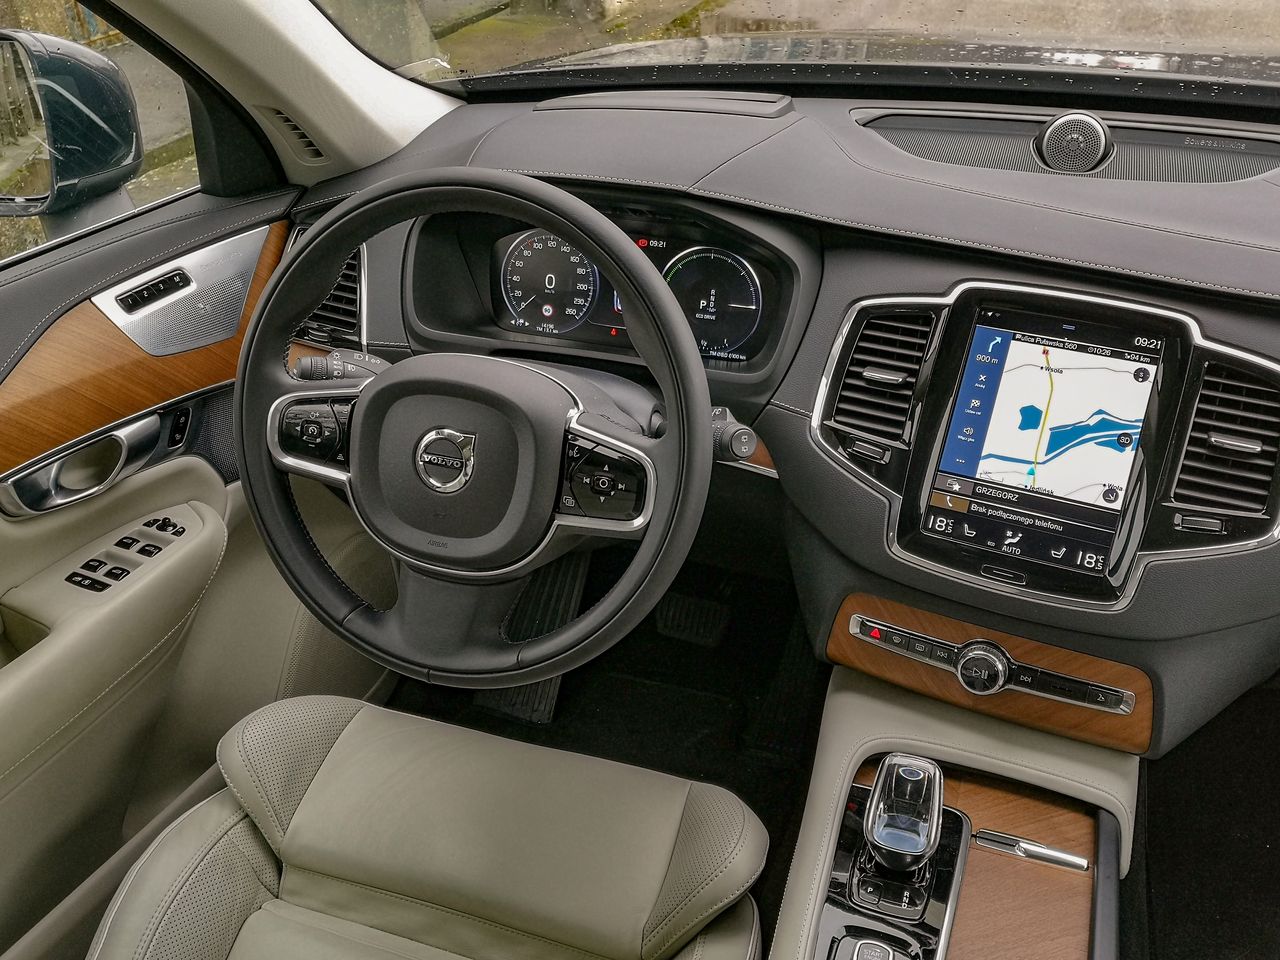 Wnętrze Volvo XC90 jest stonowane, eleganckie i nie emanuje gadżetami